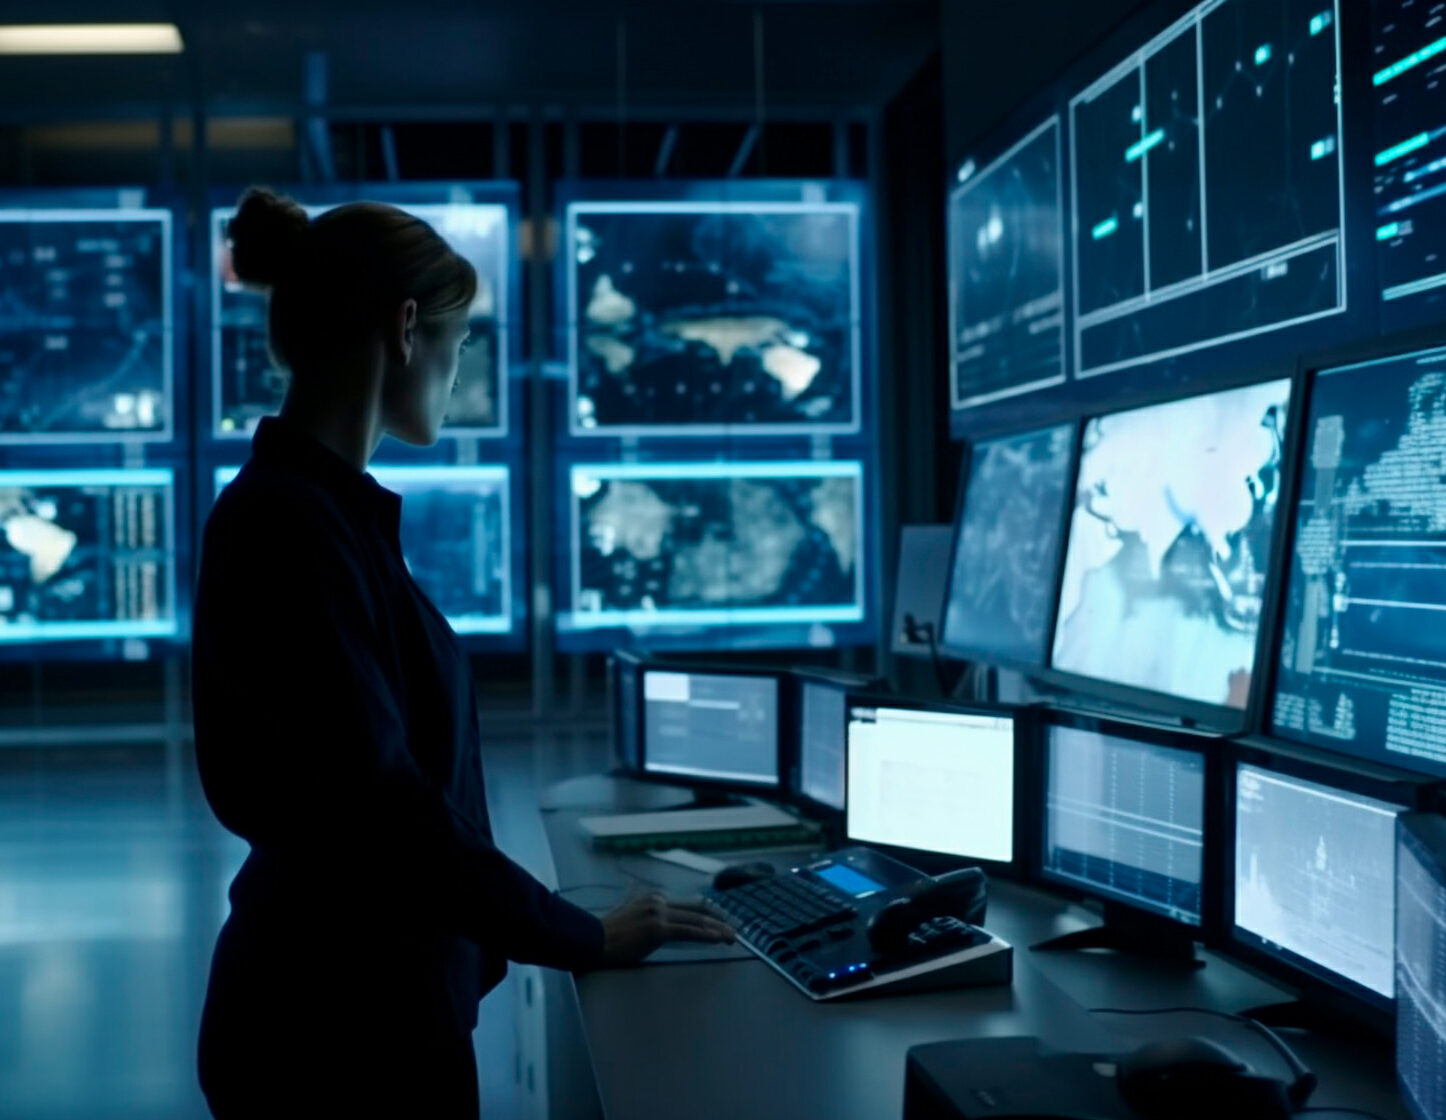 Seguridad informática: Mujer revisando diferentes sistemas en una zona de control con múltiples pantallas